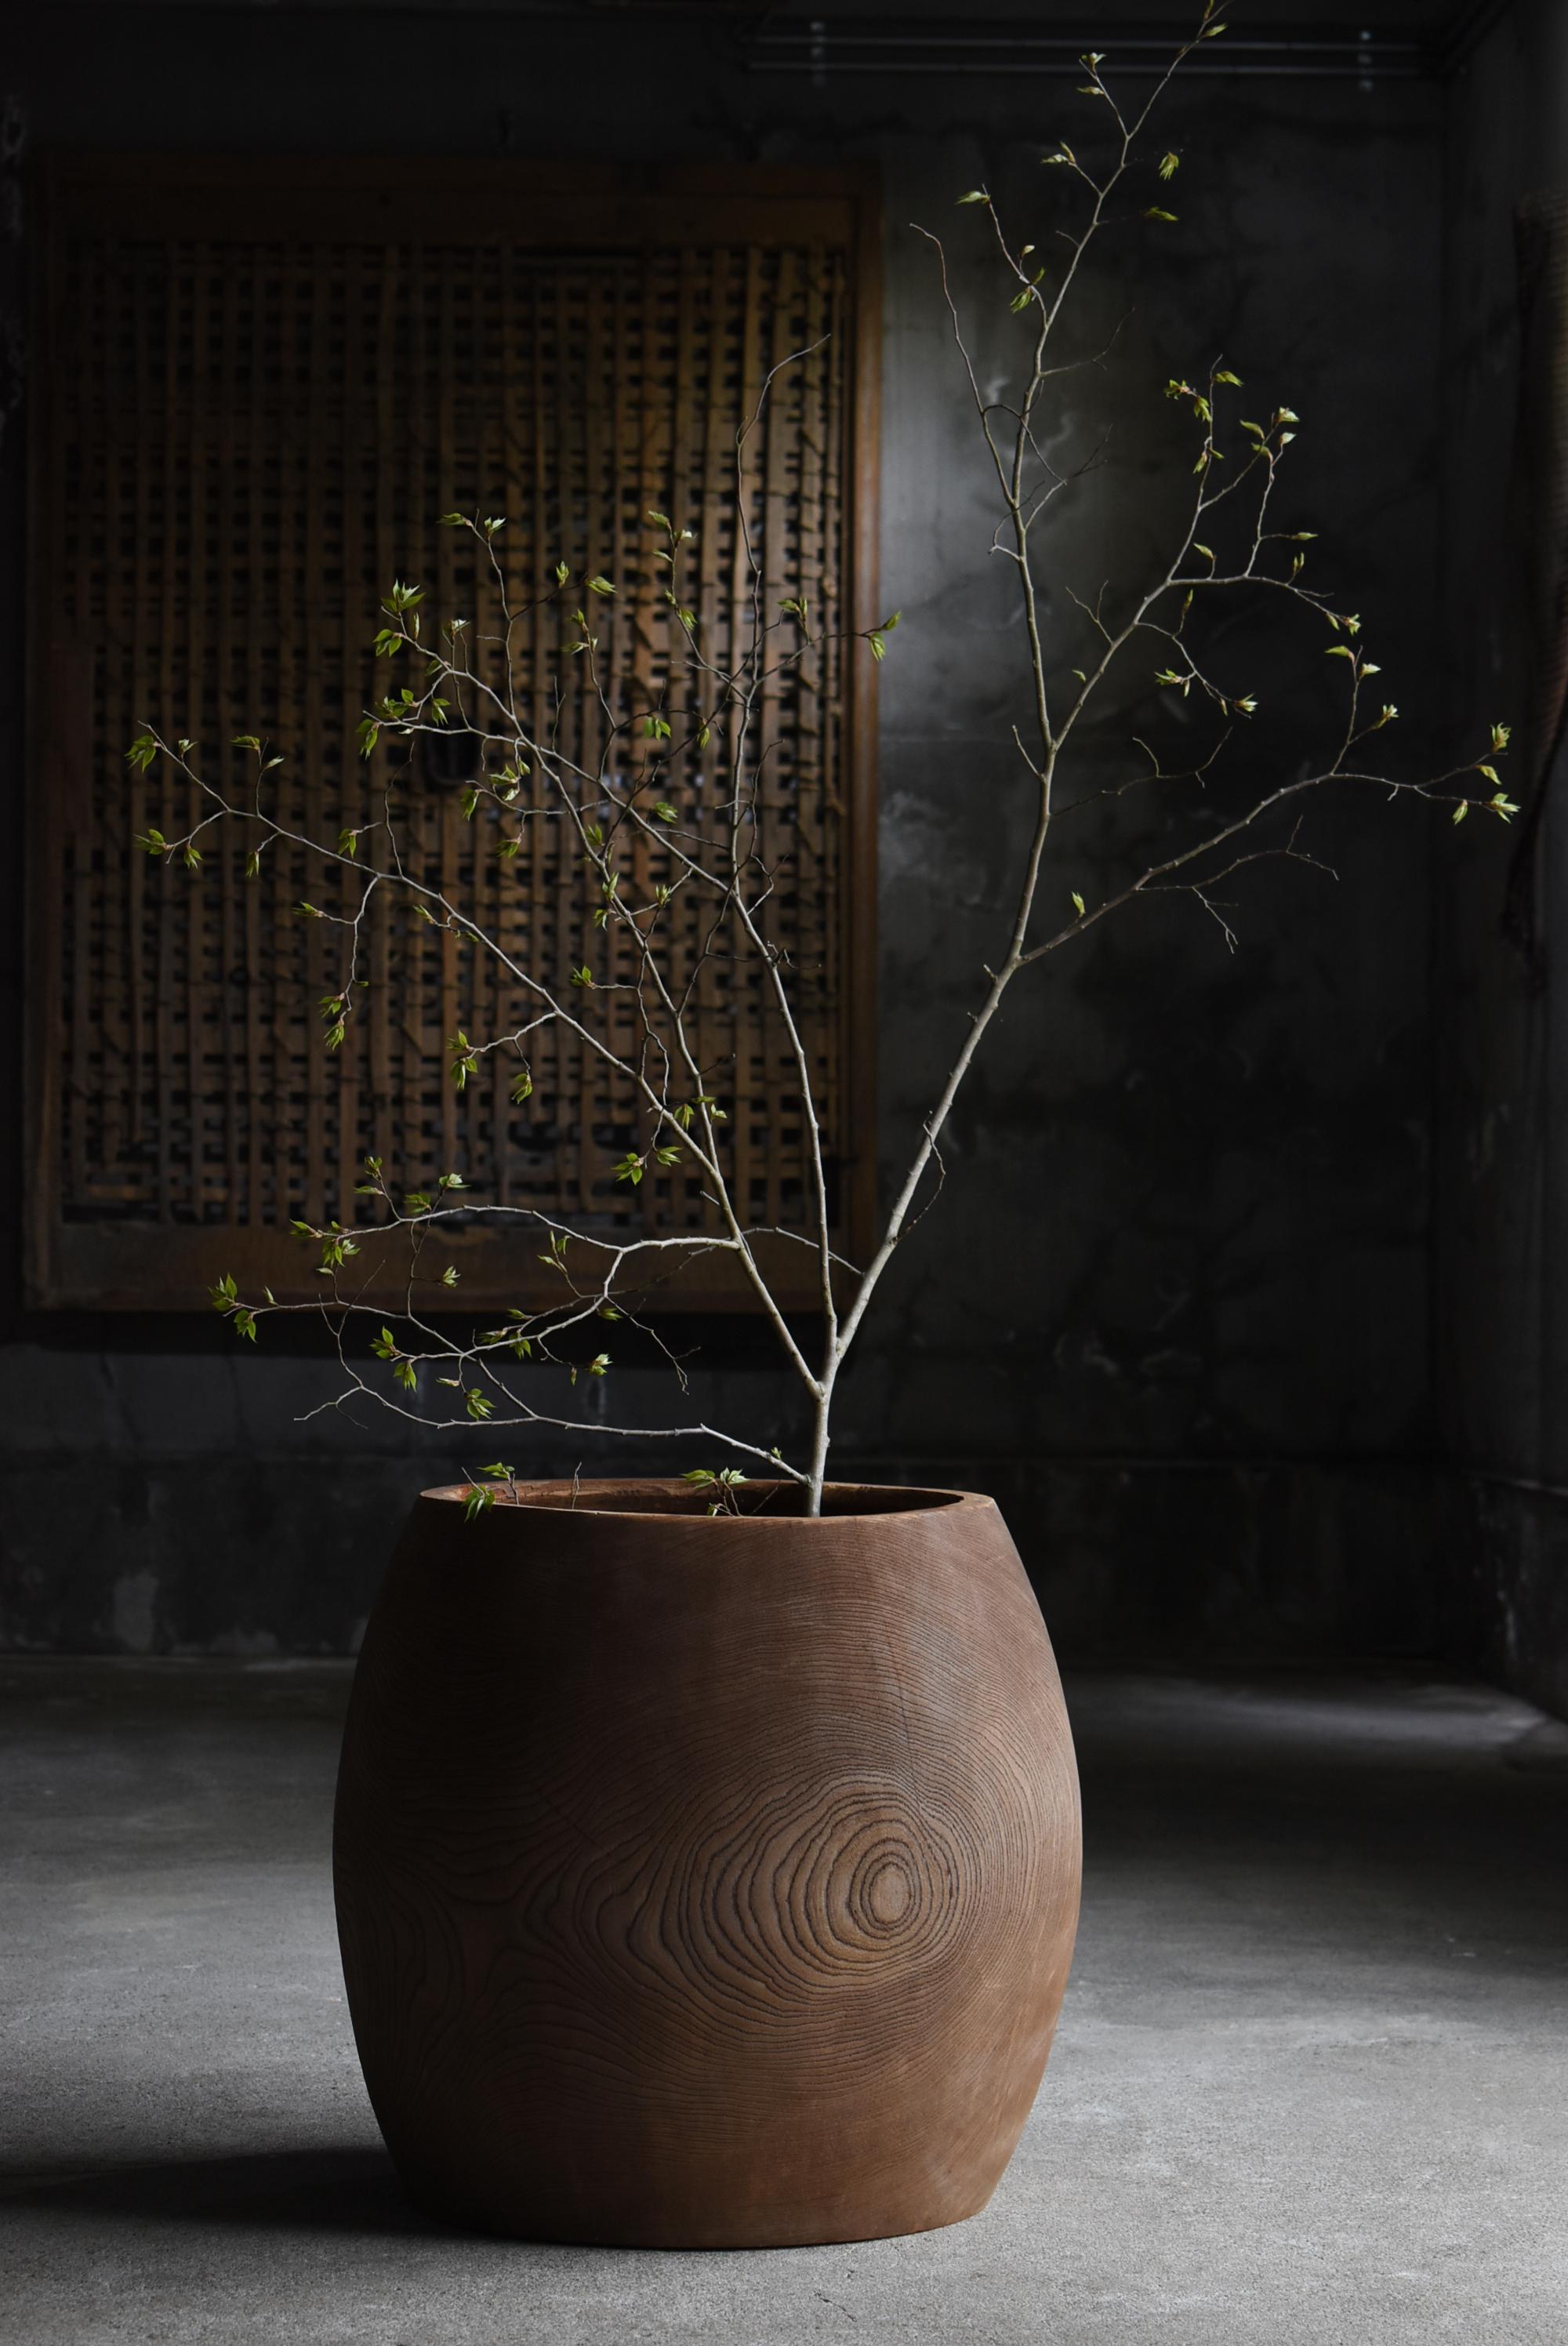 Il s'agit d'un très ancien cache-pot fabriqué au Japon.
Il date du début de la période Showa (années 1920-1940).
Il est sculpté dans un grand arbre zelkova.

Il est sculpté à la main et fabriqué avec soin.
Le plus beau, c'est le magnifique grain du